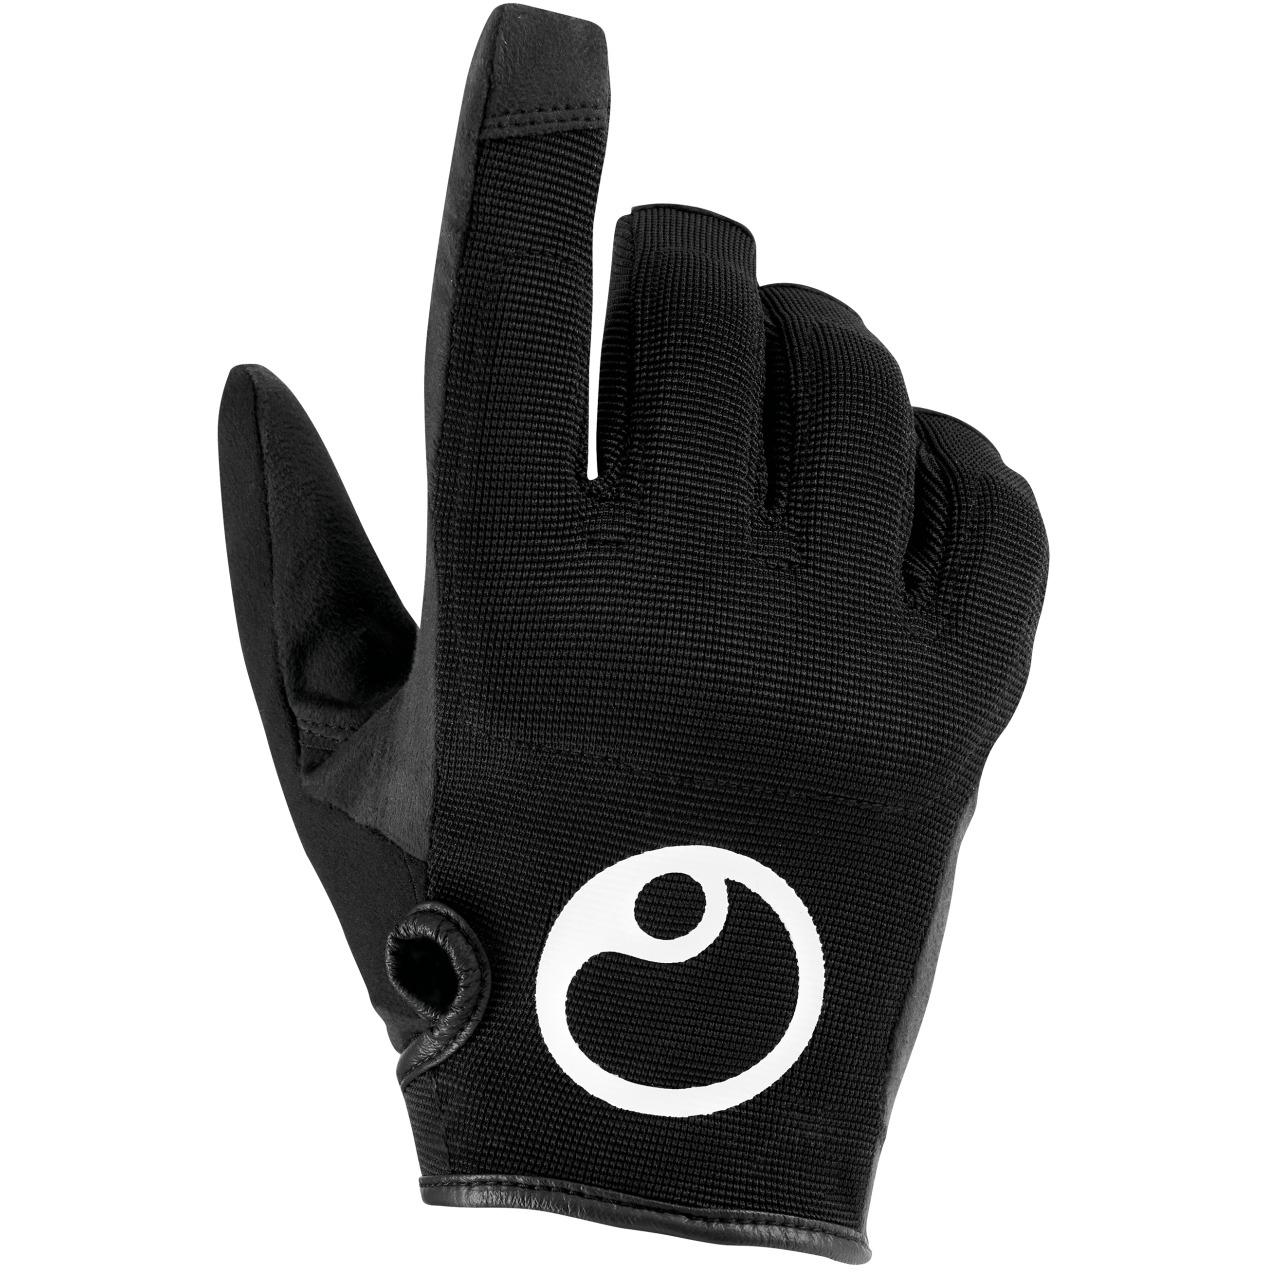 Productfoto van Ergon HE2 Evo Full Finger Gloves - black